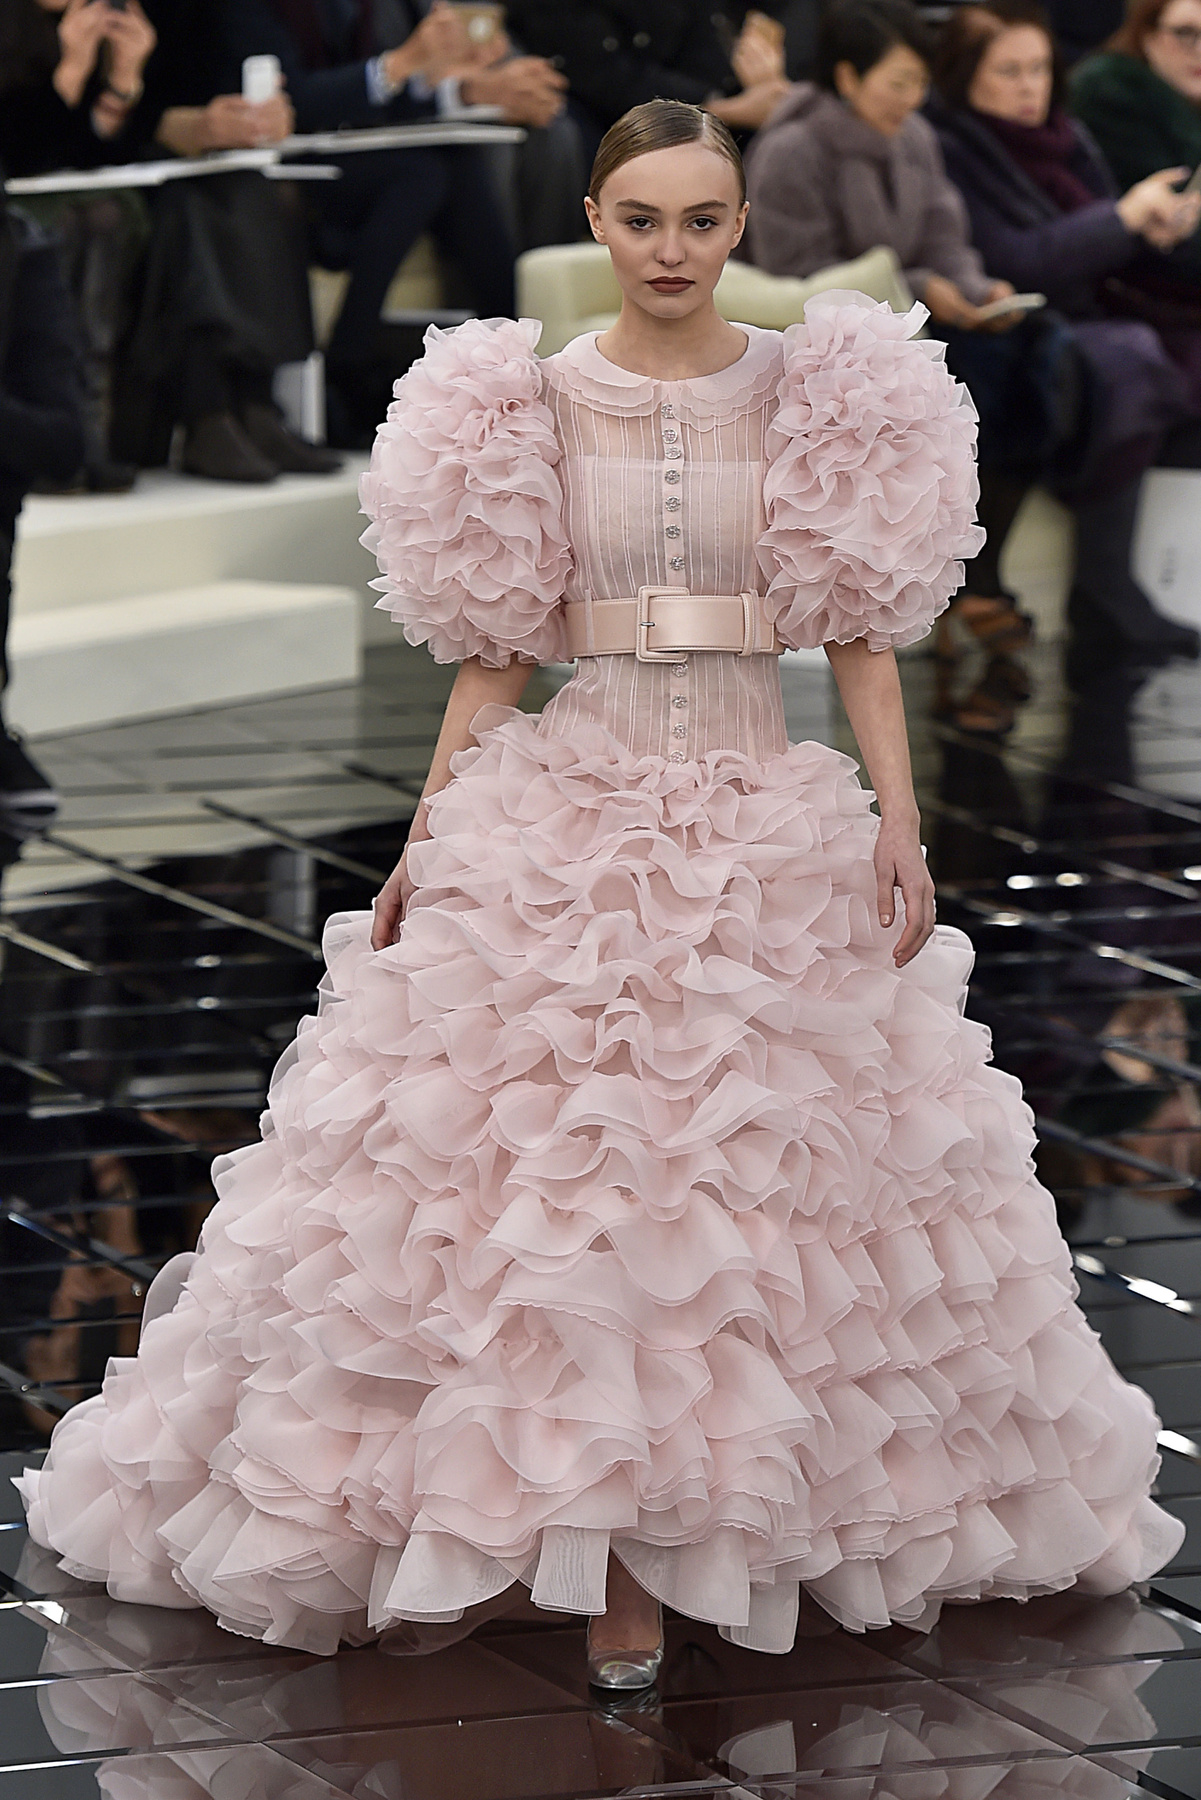 Rózsaszín ruha, fodrok, puffos ujjak és öves megoldás a Chanelnél.